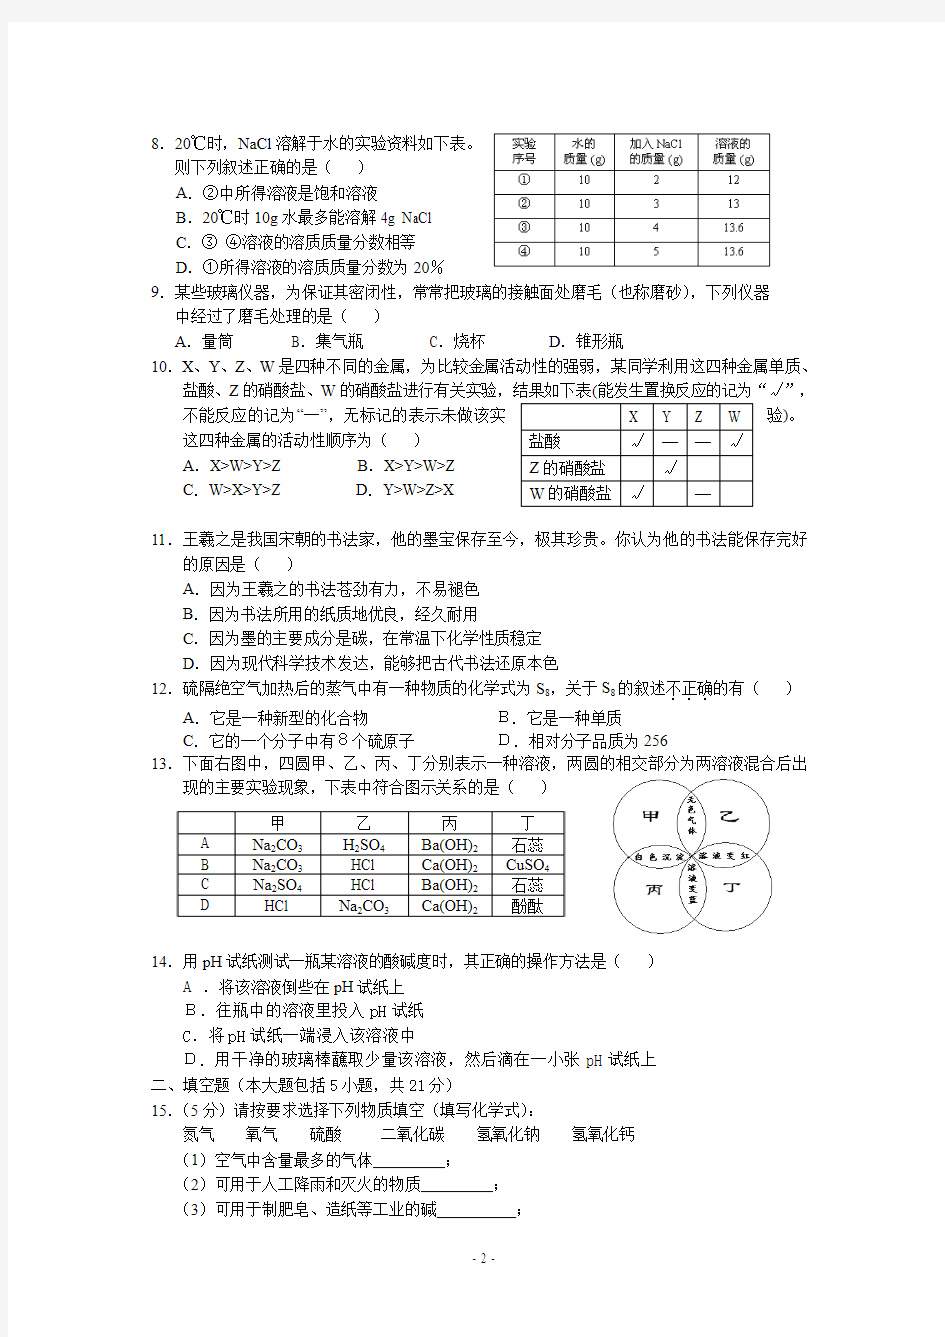 2010全国初中学生化学素质和实验能力竞赛__广东赛区初赛试题及答案[1]